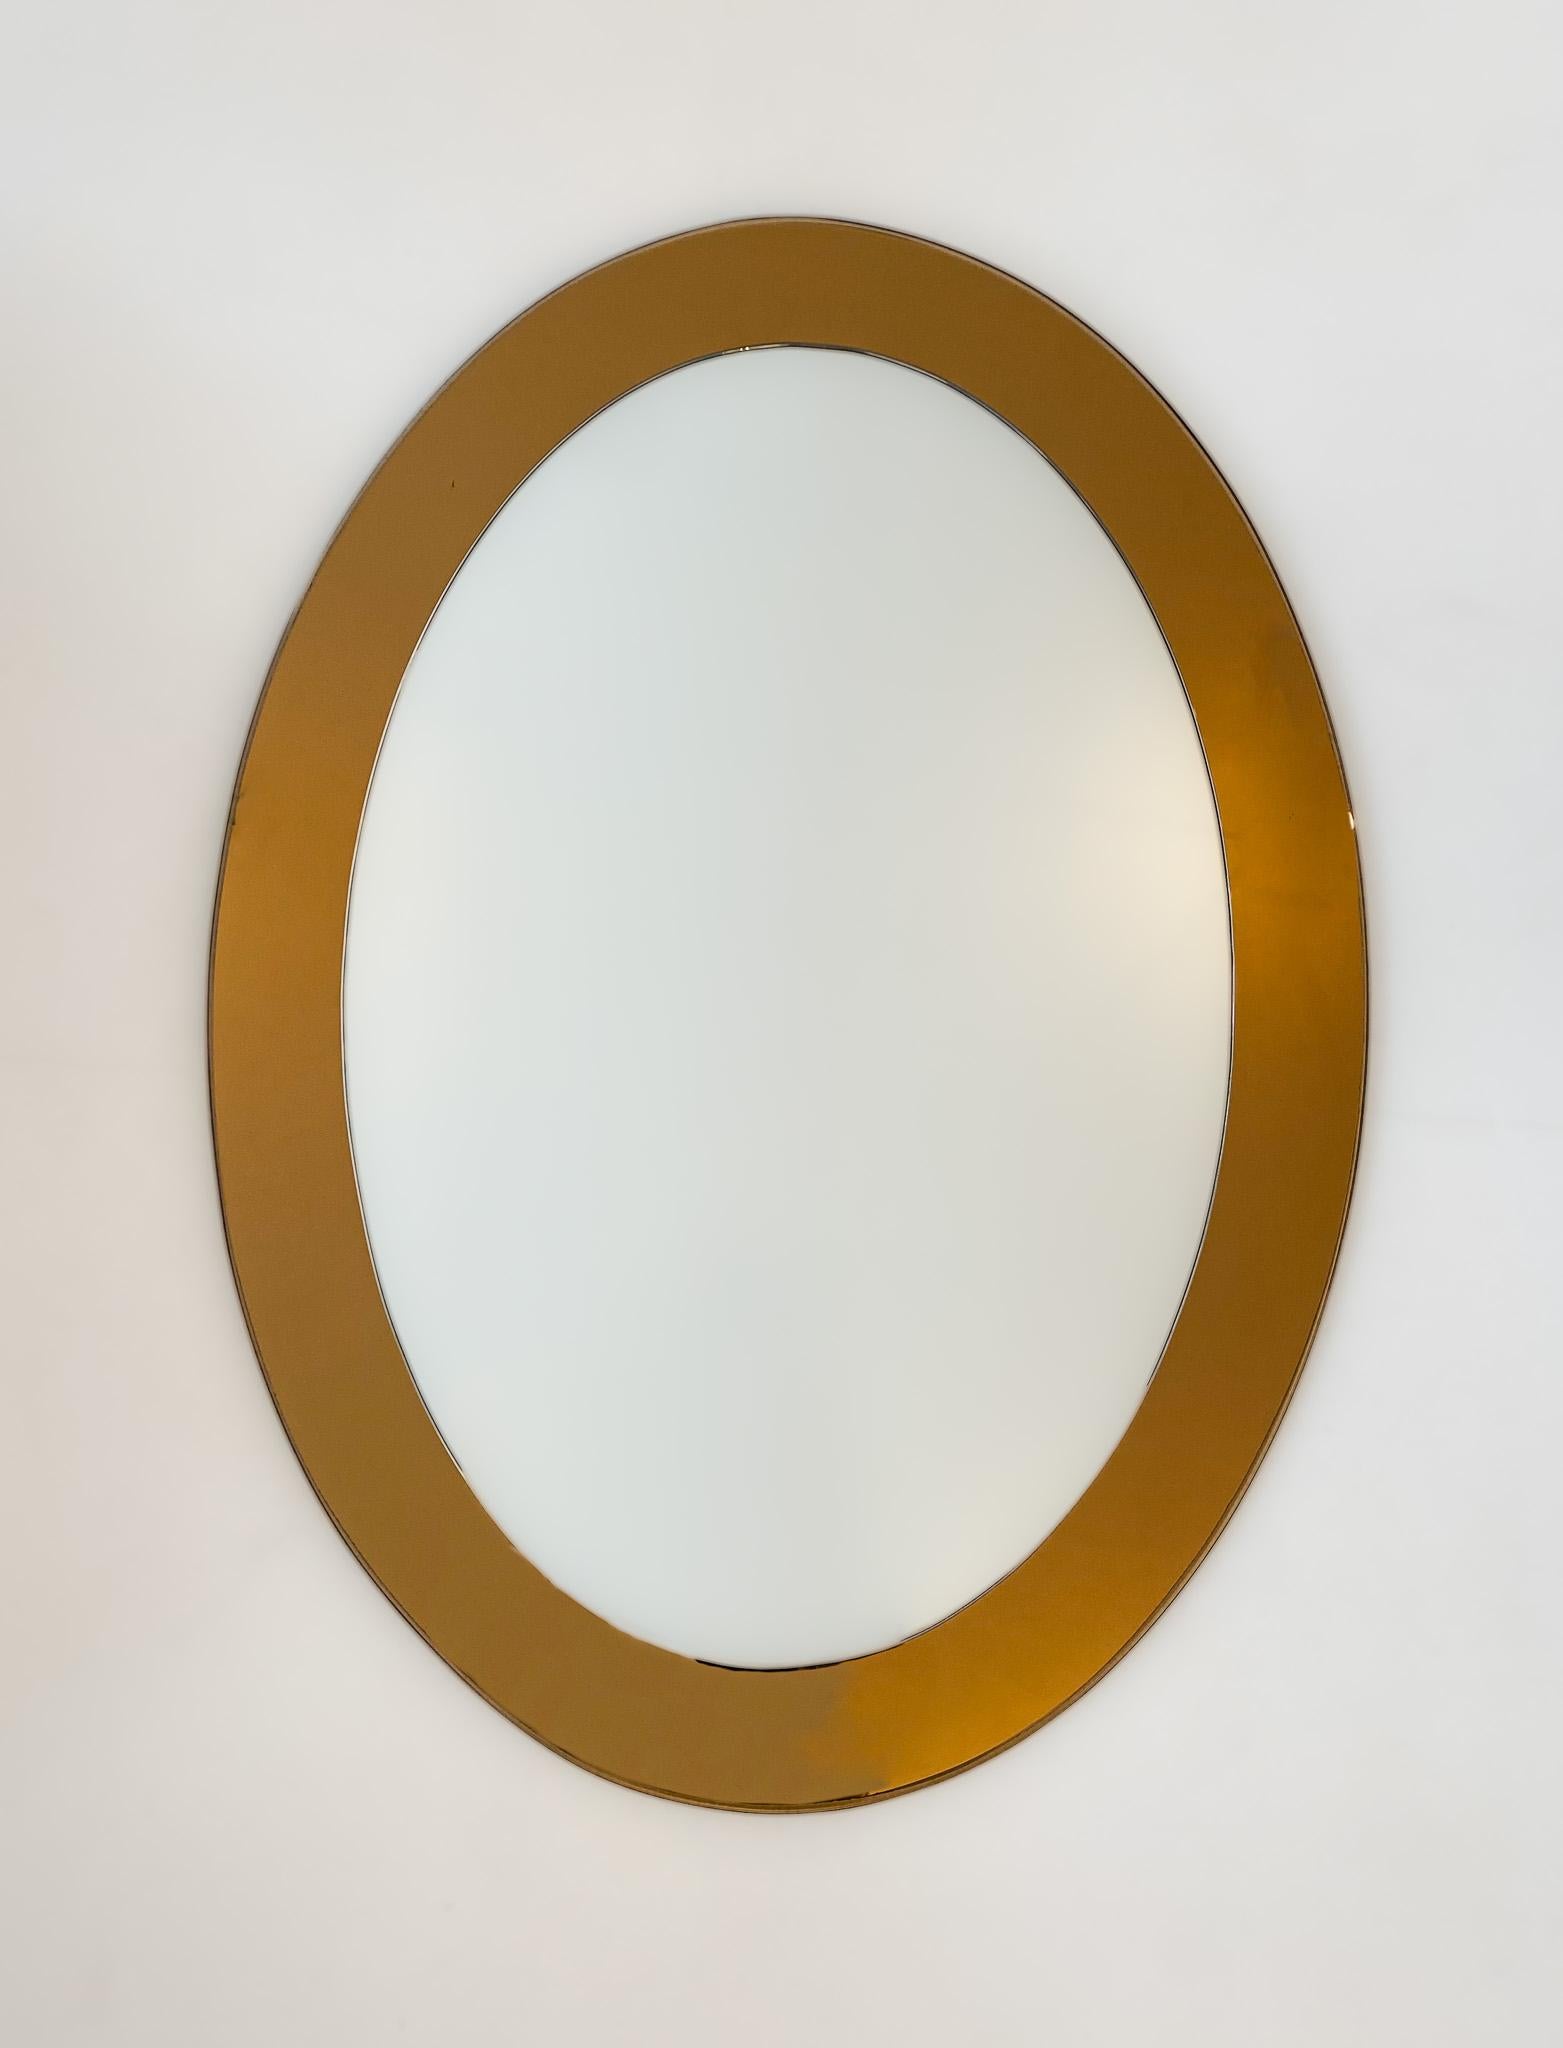 Brauner ovaler Glaswandspiegel aus der Jahrhundertmitte, Italien 1970er Jahre.

Sehr eleganter ovaler italienischer Wandspiegel aus den 70er Jahren. Dieser Wandspiegel überzeugt durch seinen Rahmen aus braun verspiegeltem Kristallglas und seine